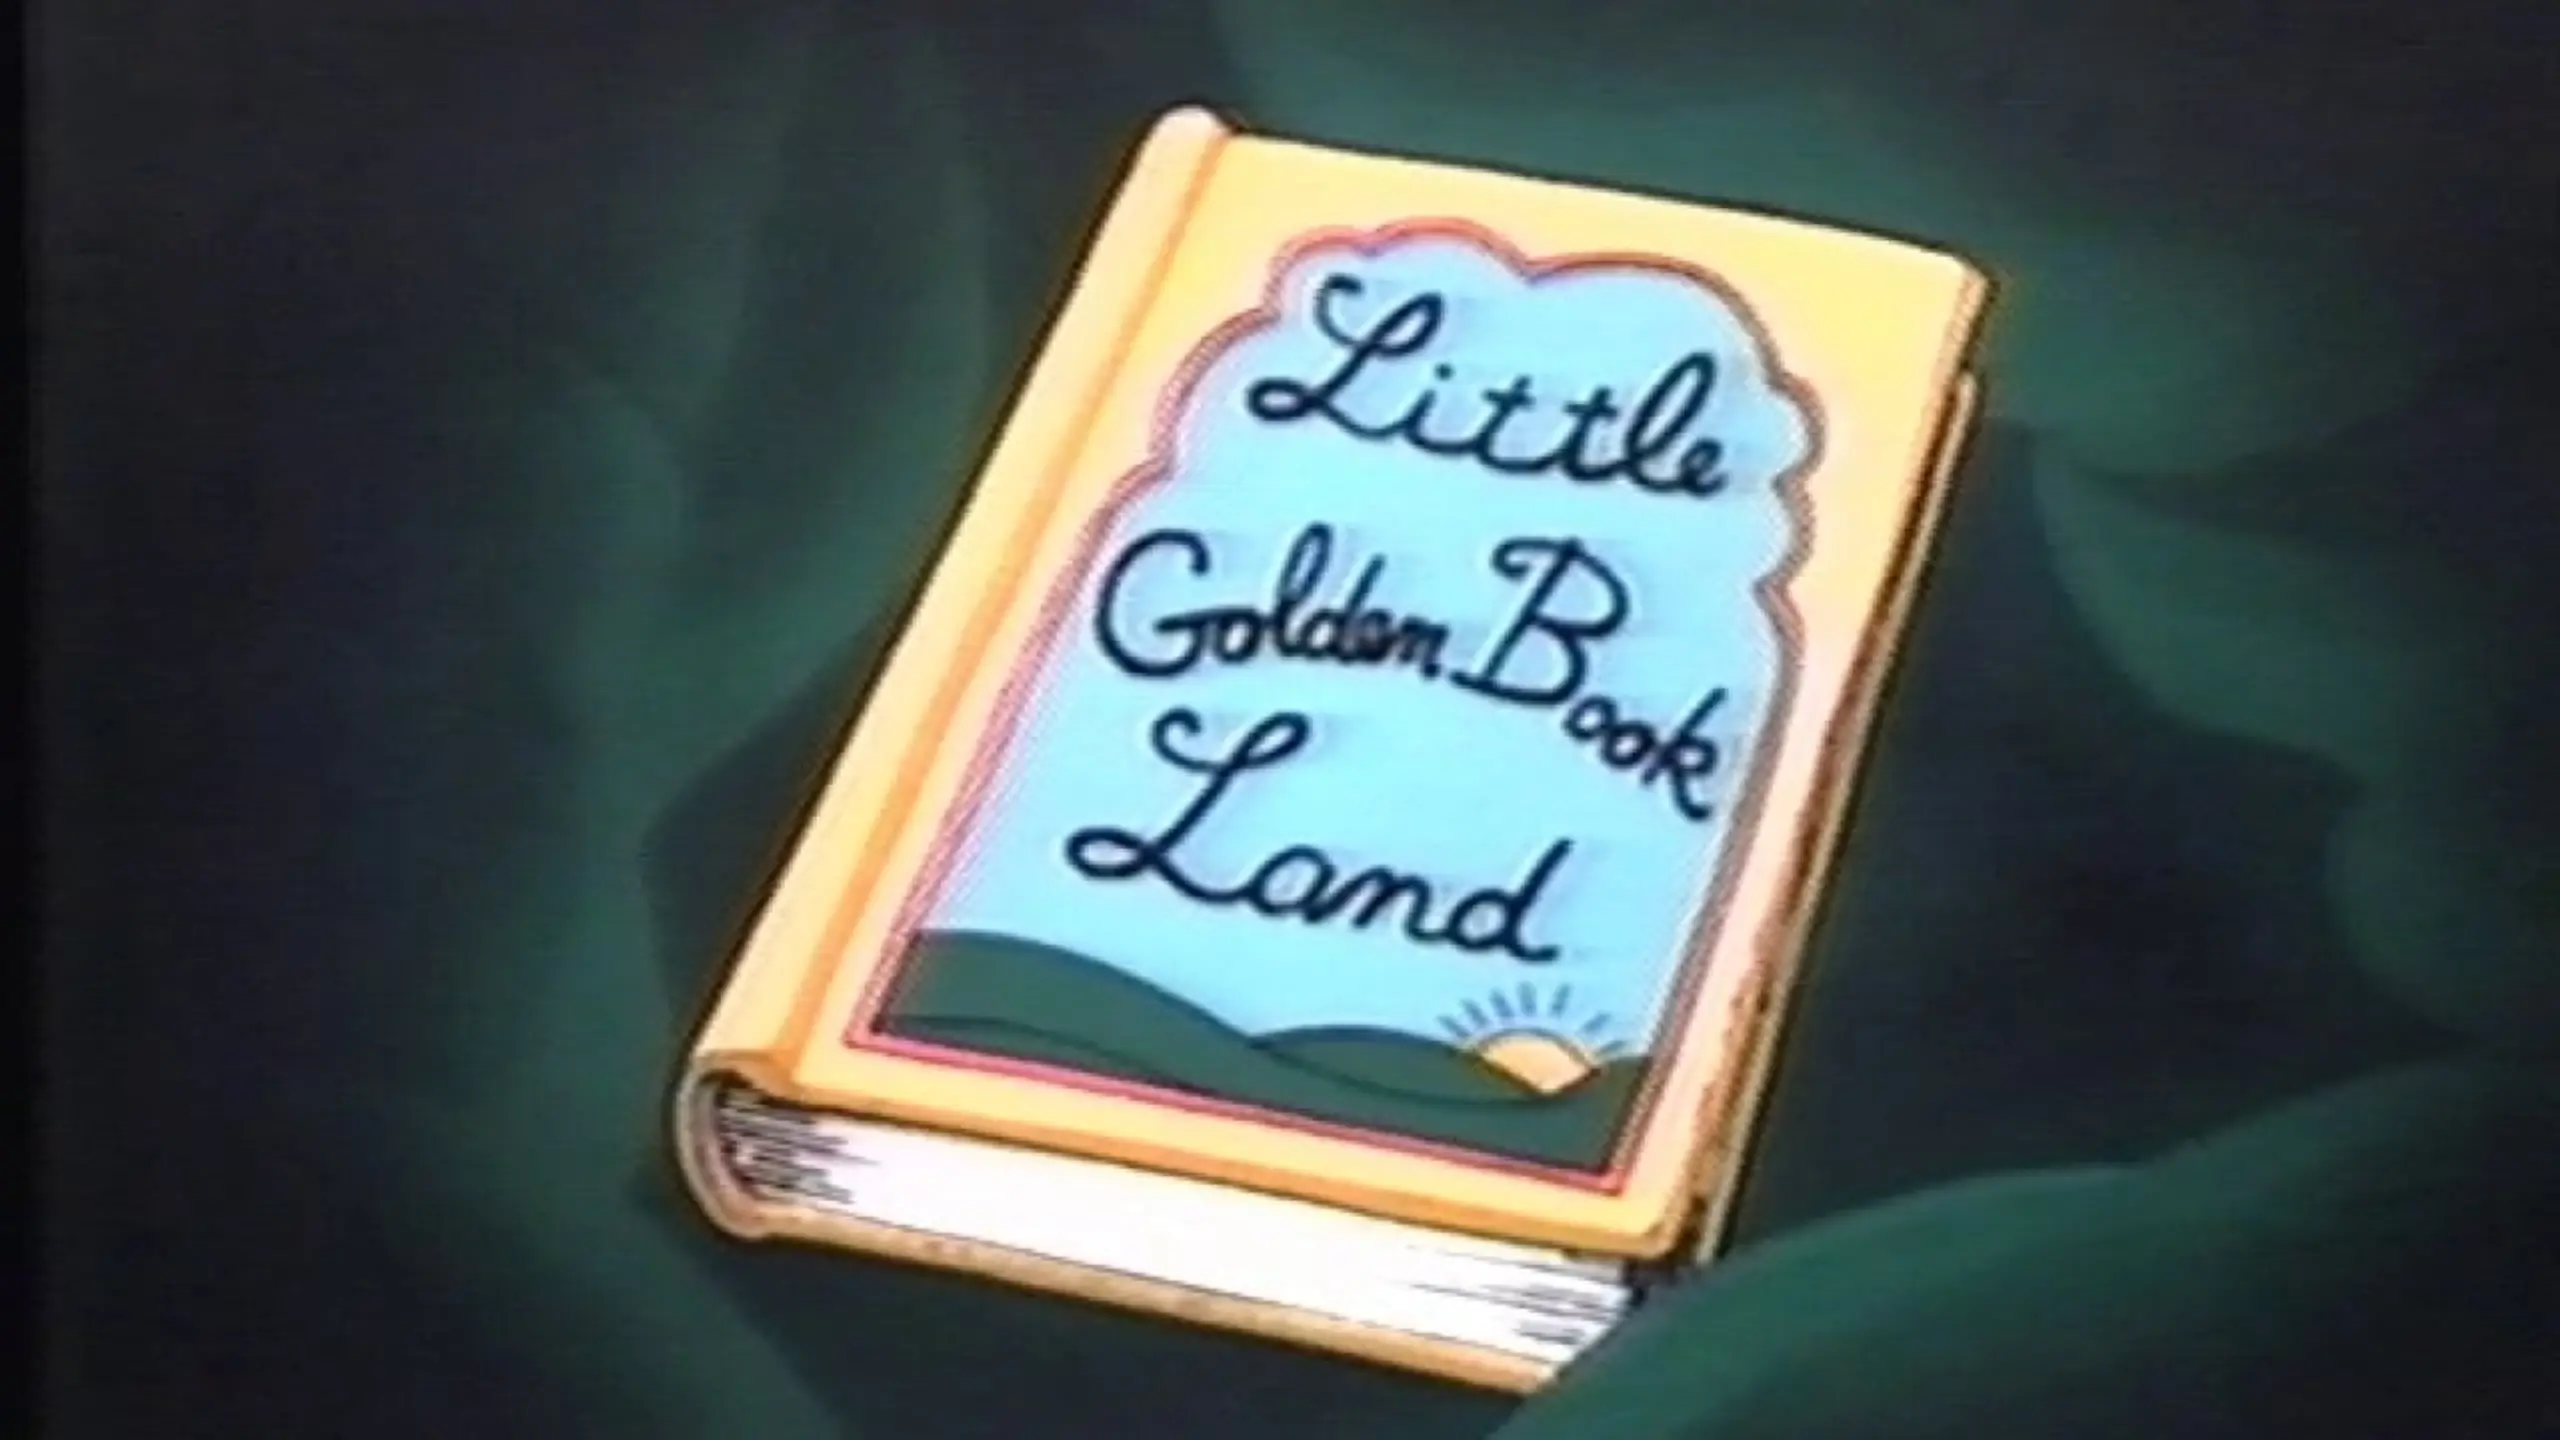 Little Golden Book Land